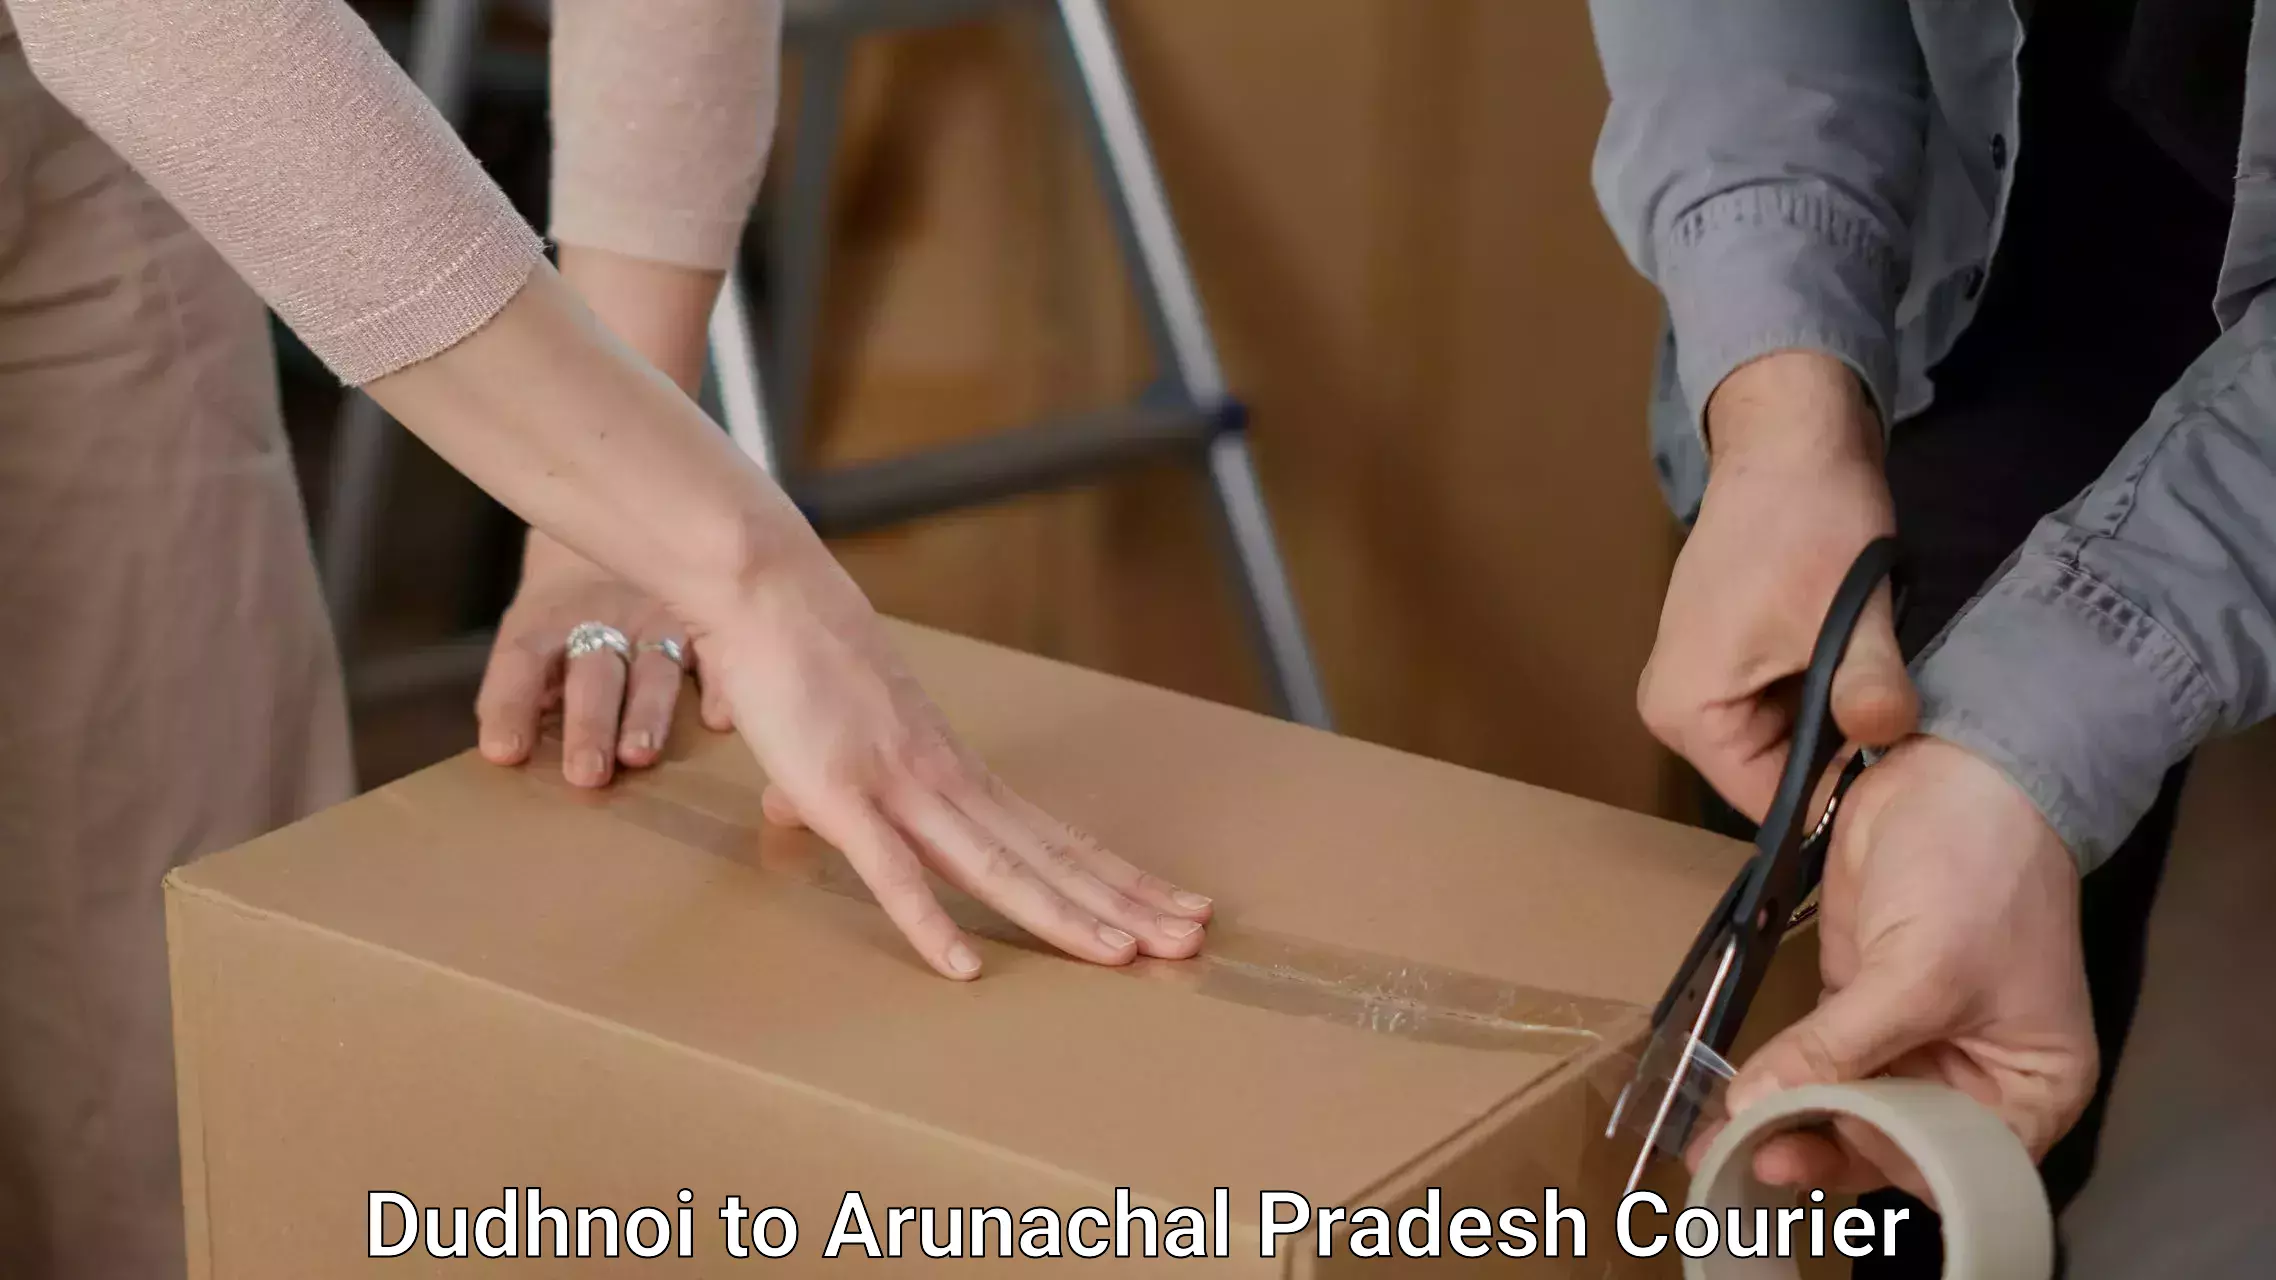 Furniture moving and handling Dudhnoi to Arunachal Pradesh